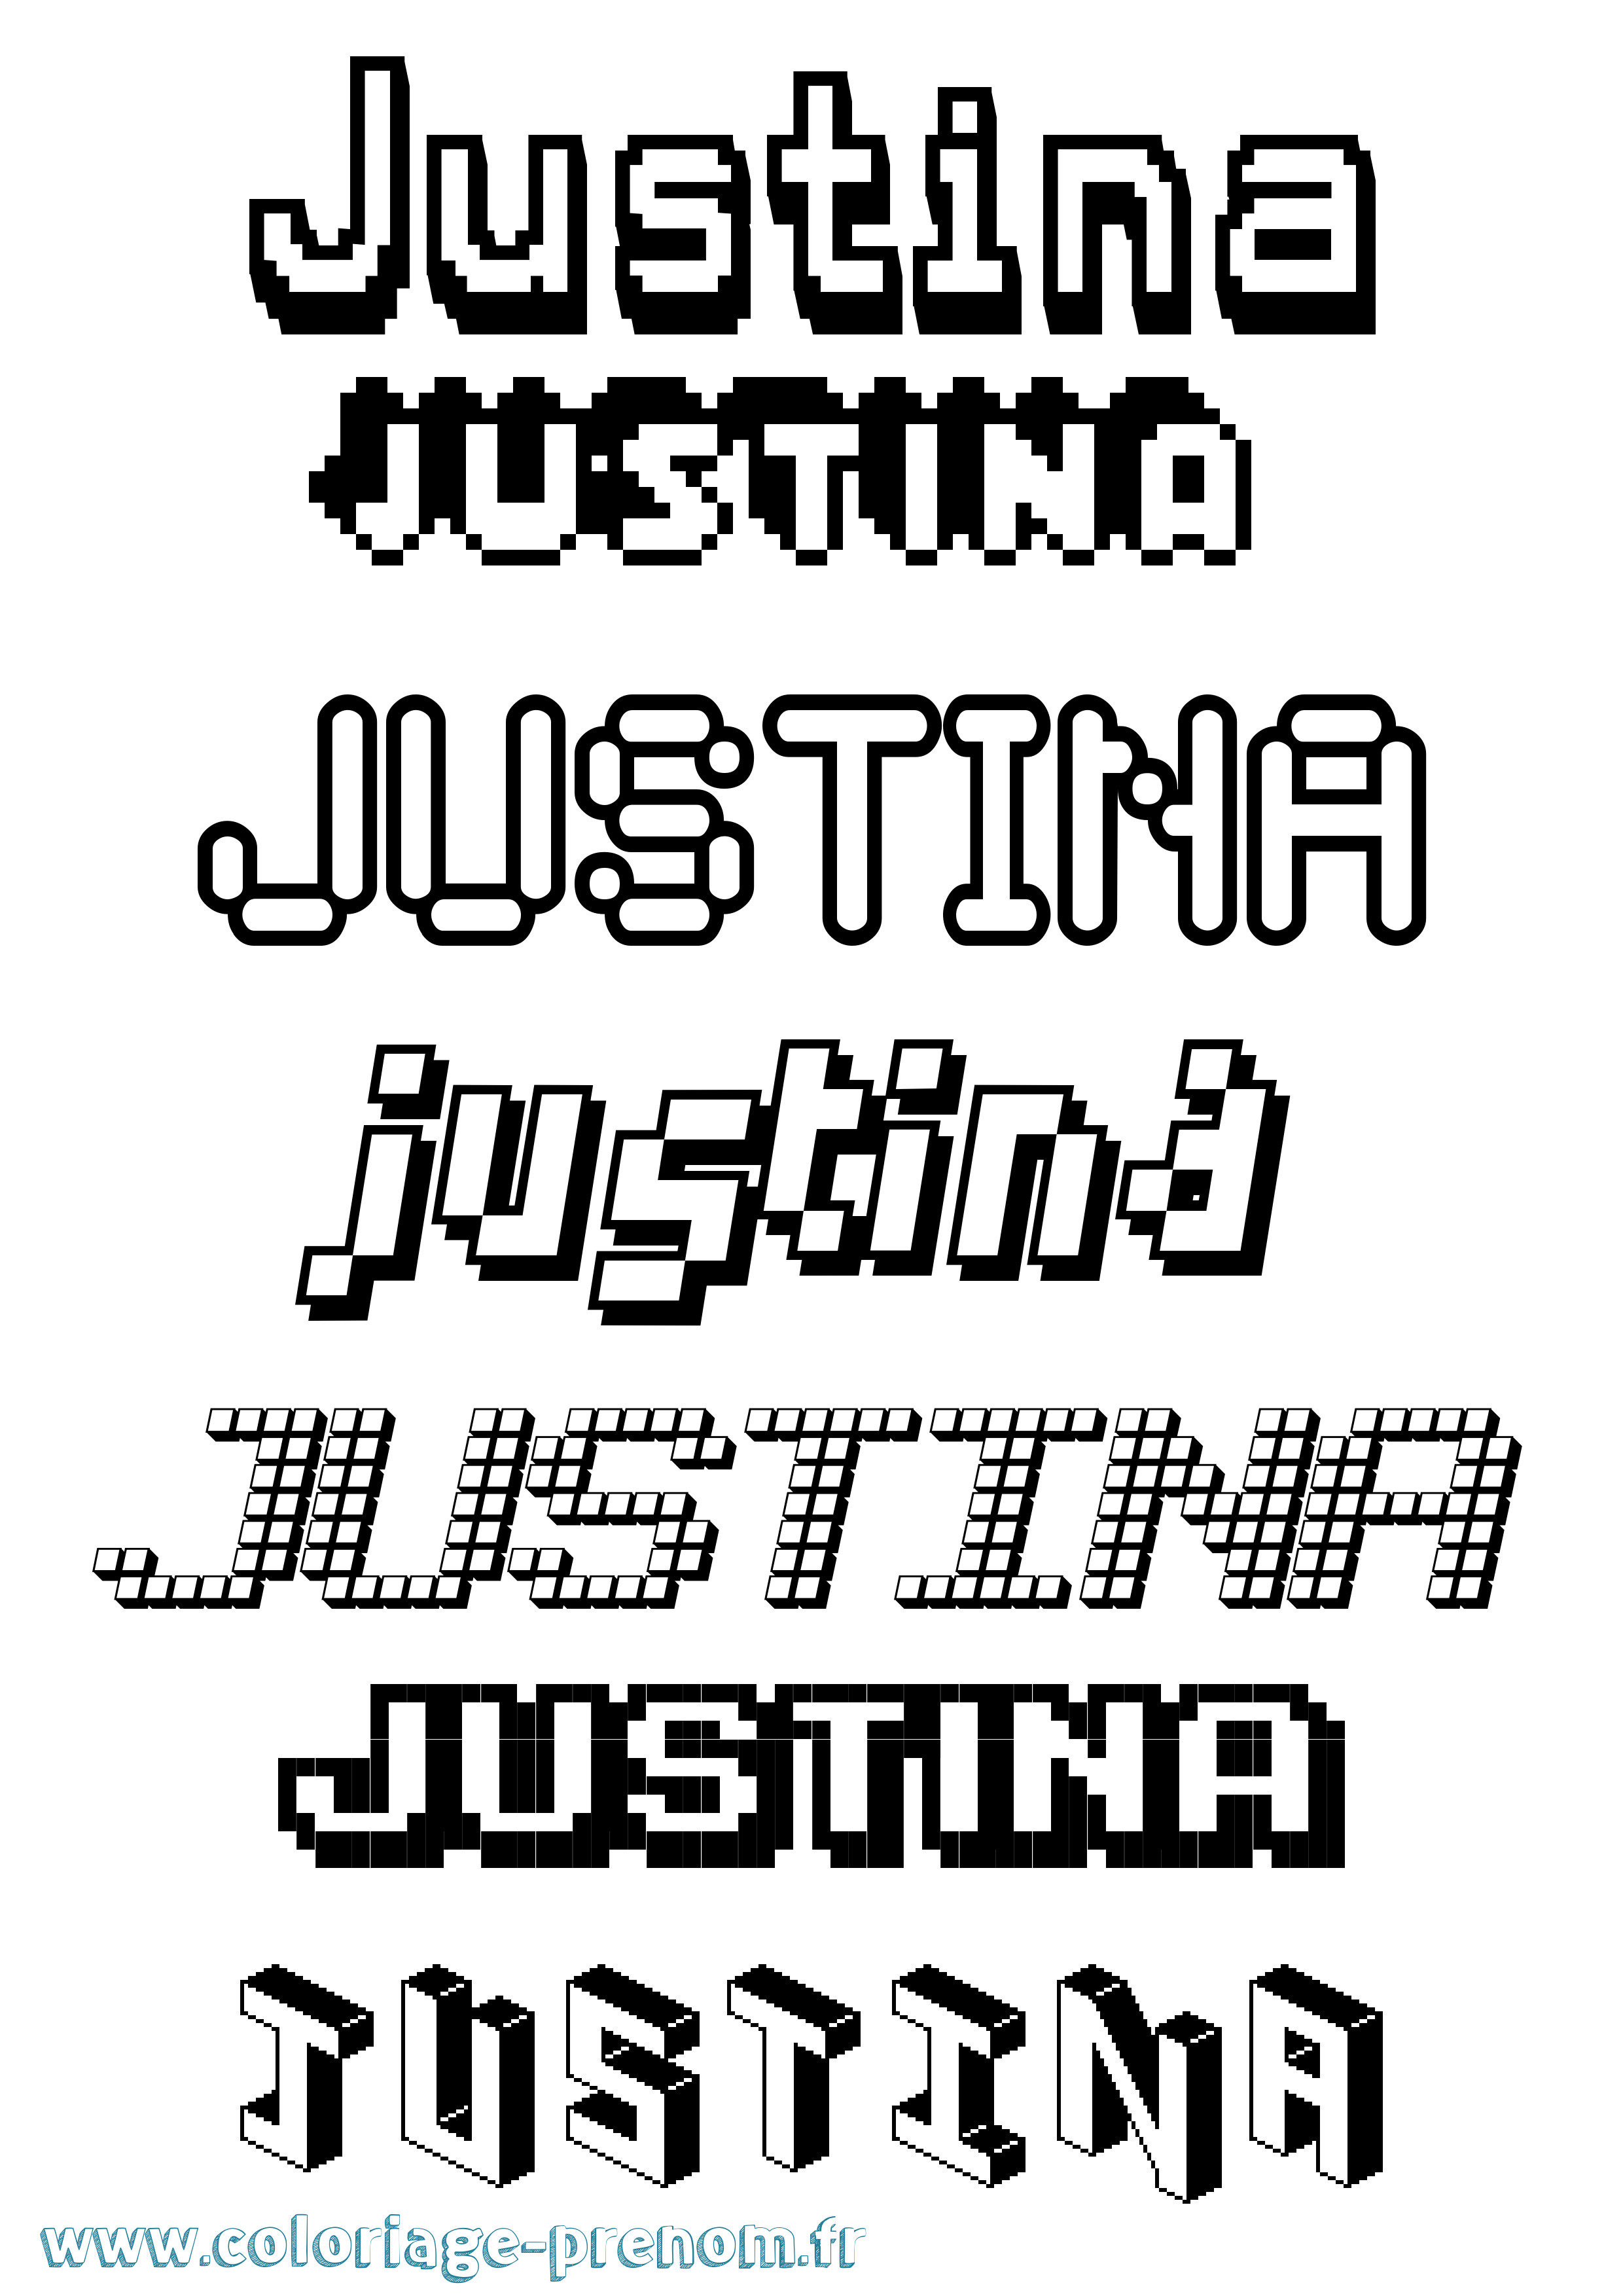 Coloriage prénom Justina Pixel